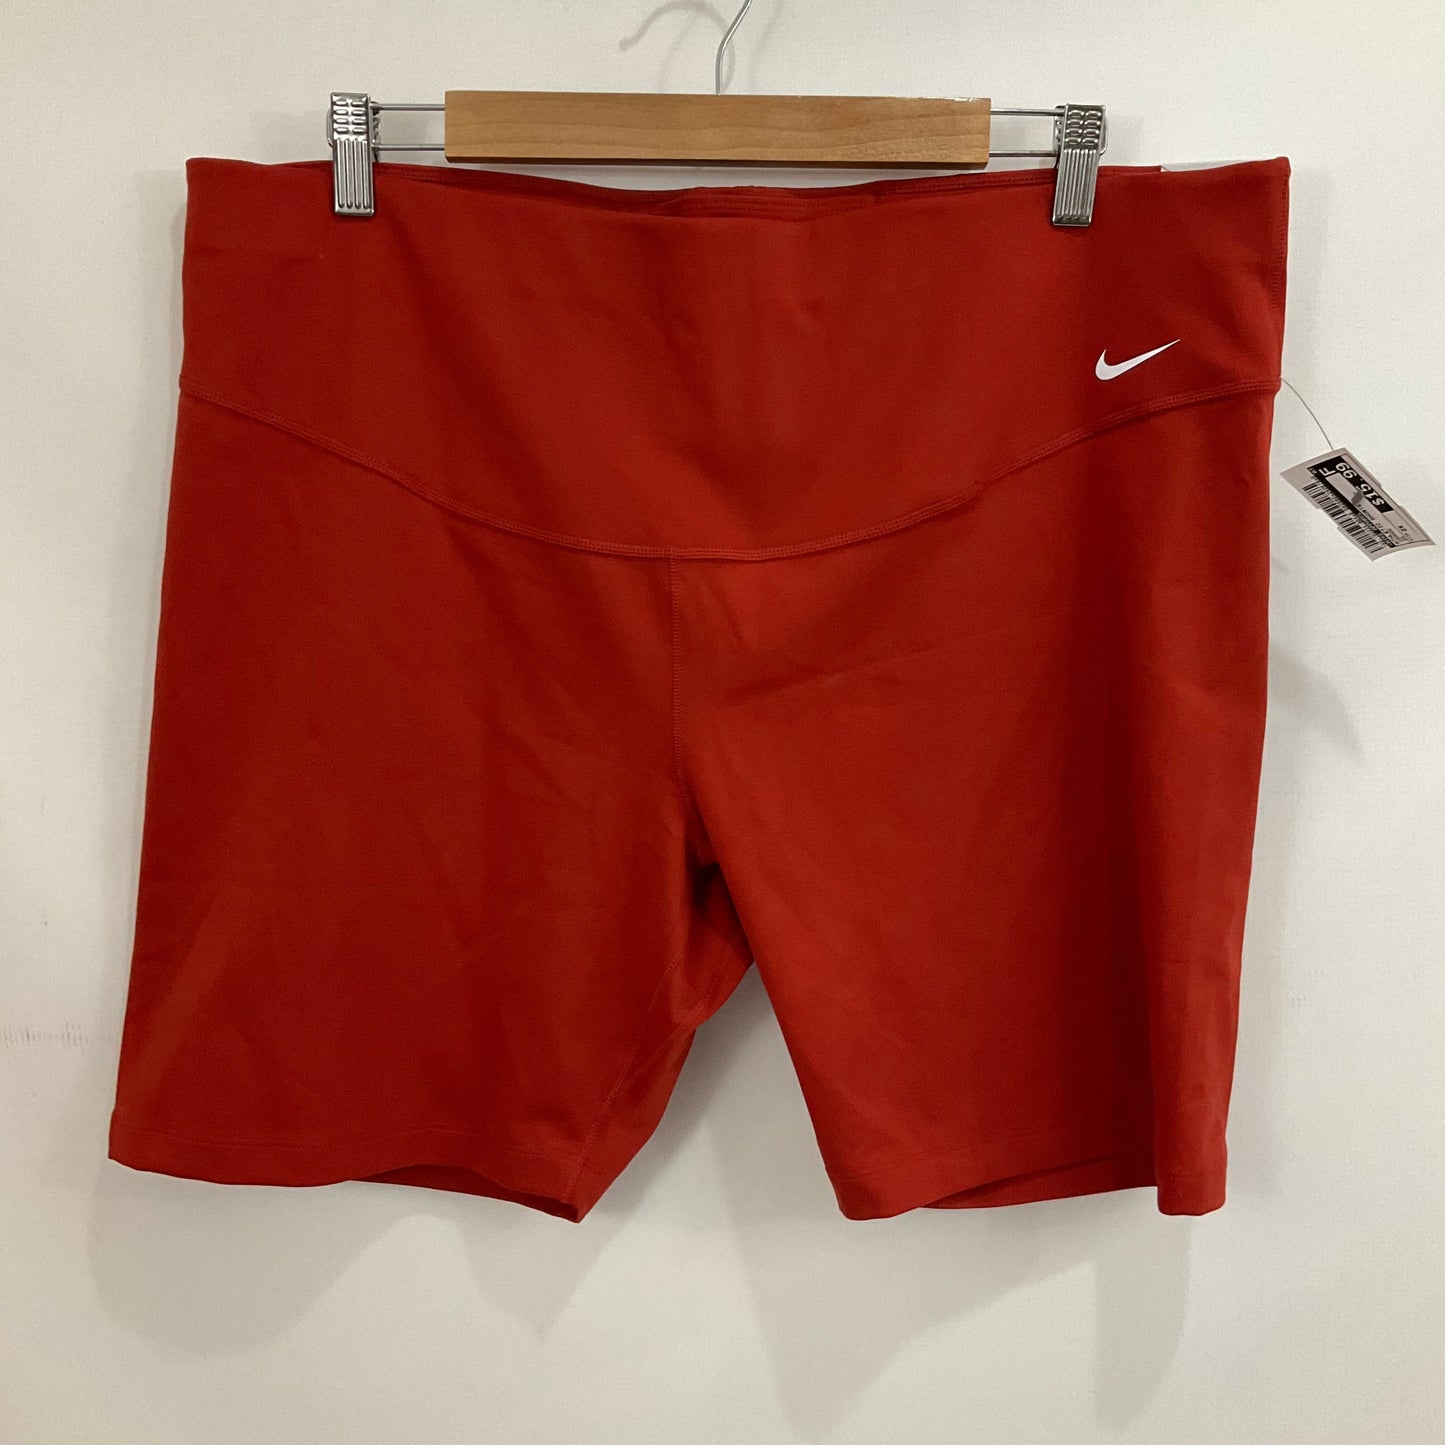 Orange Athletic Shorts Nike Apparel, Size 2x